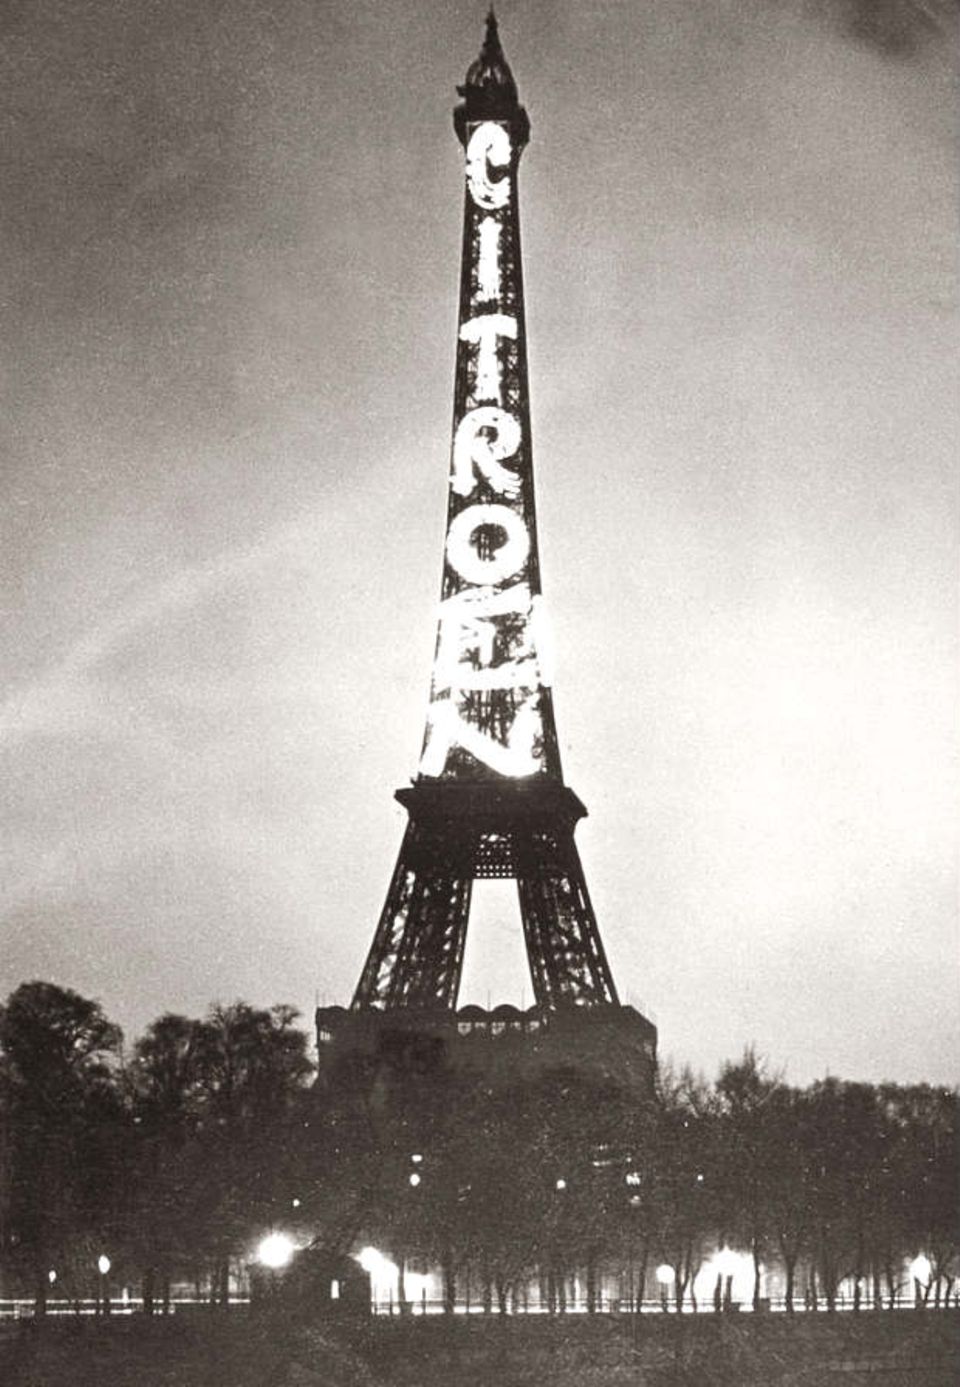 1925 wirbt André Citroën am Eiffelturm für seine Autos. Im selben Jahr verkauft der Hochstapler Victor Lustig gleich den ganzen Turm